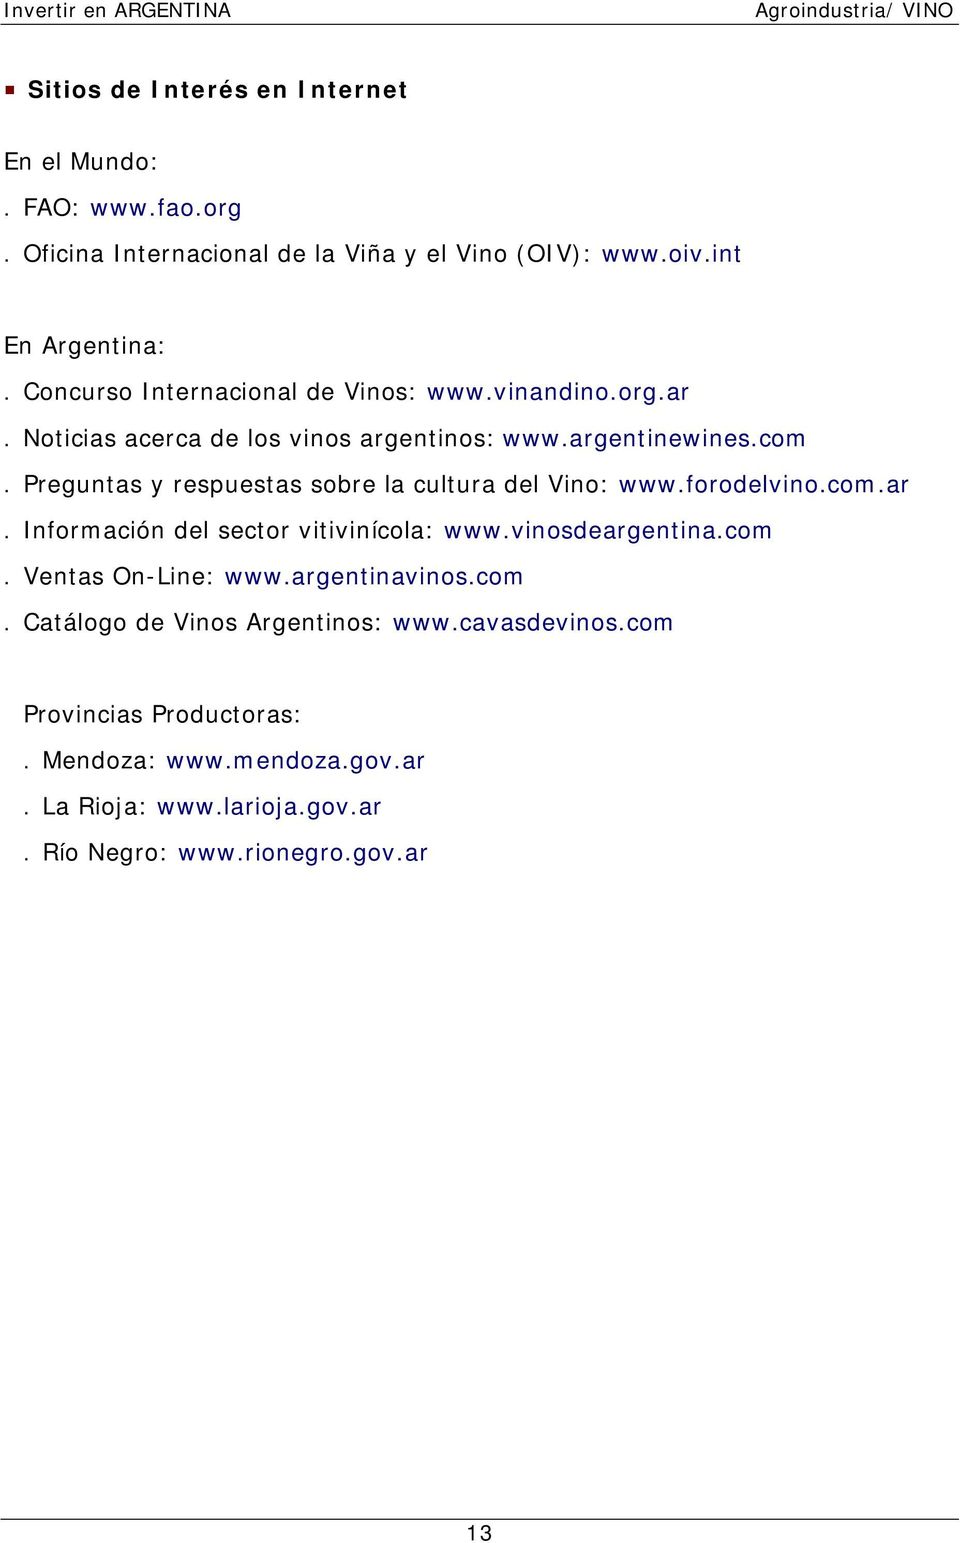 Preguntas y respuestas sobre la cultura del Vino: www.forodelvino.com.ar. Información del sector vitivinícola: www.vinosdeargentina.com. Ventas On-Line: www.